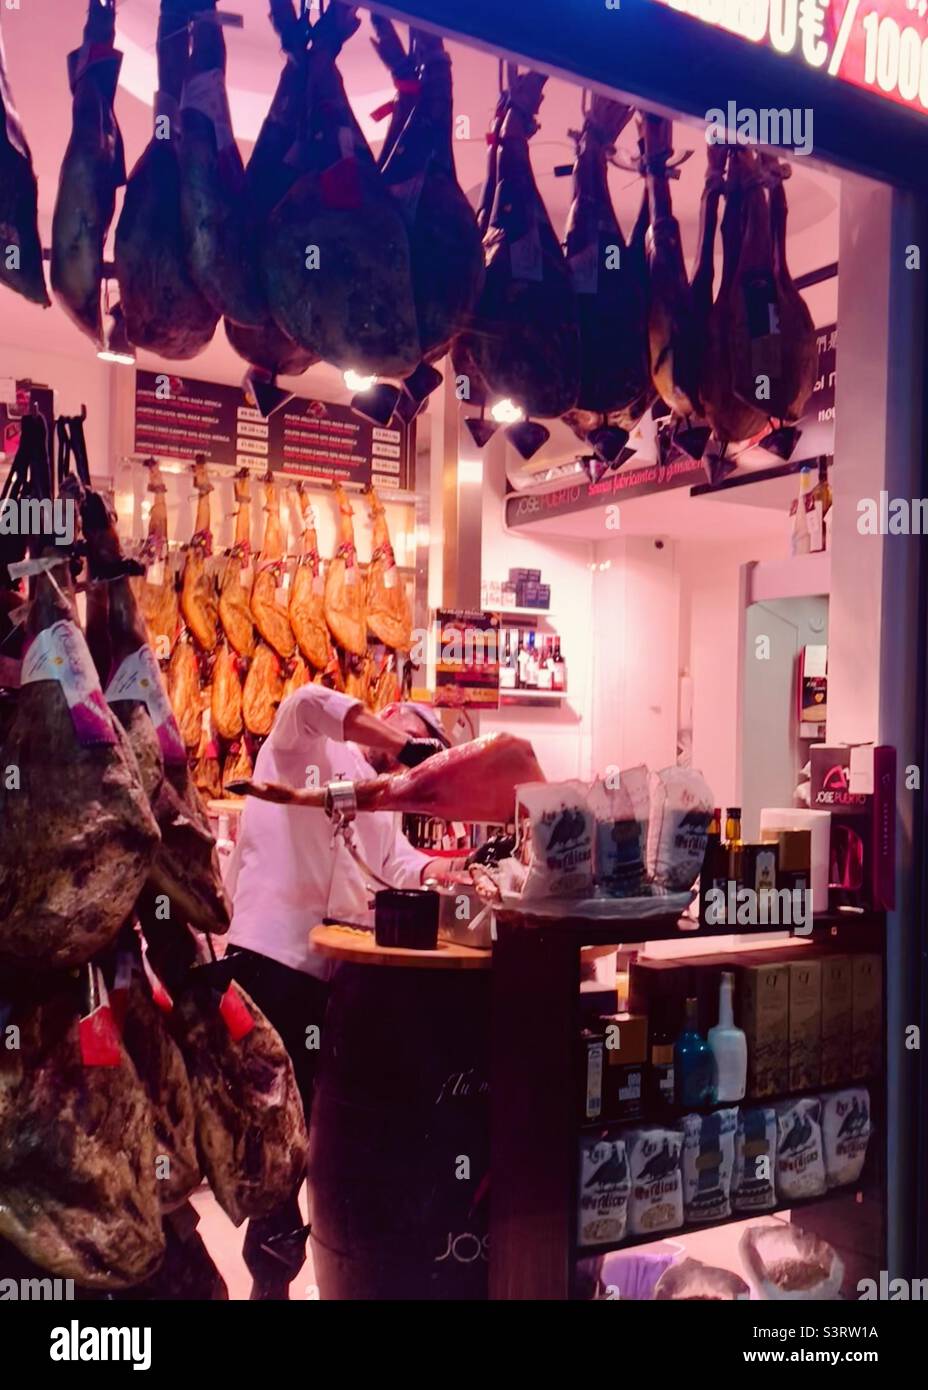 Spanish ham shop, Jamón de Bellota Ibérico, Malaga lit up at night Stock Photo